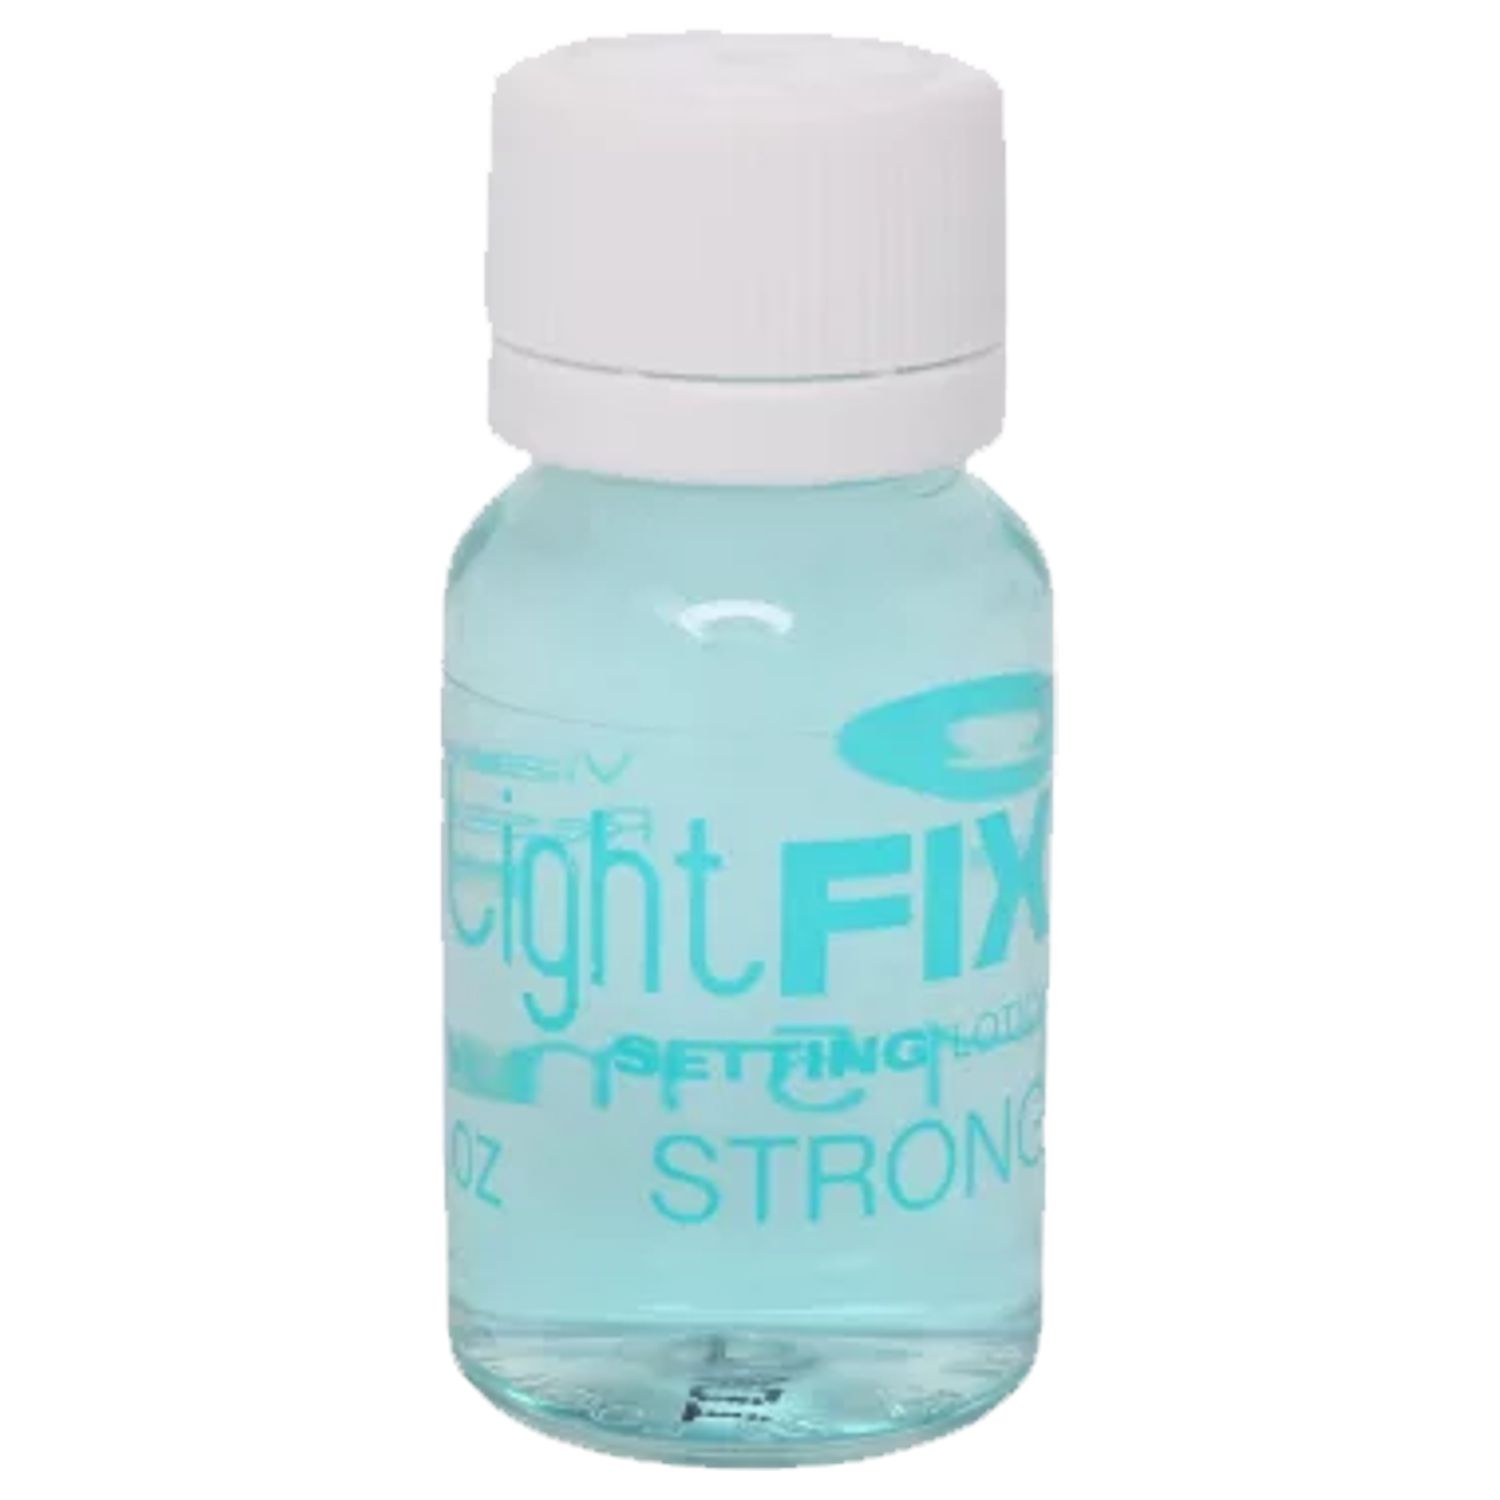 LISAP Lightfix strong Portionsfestiger 15 ml